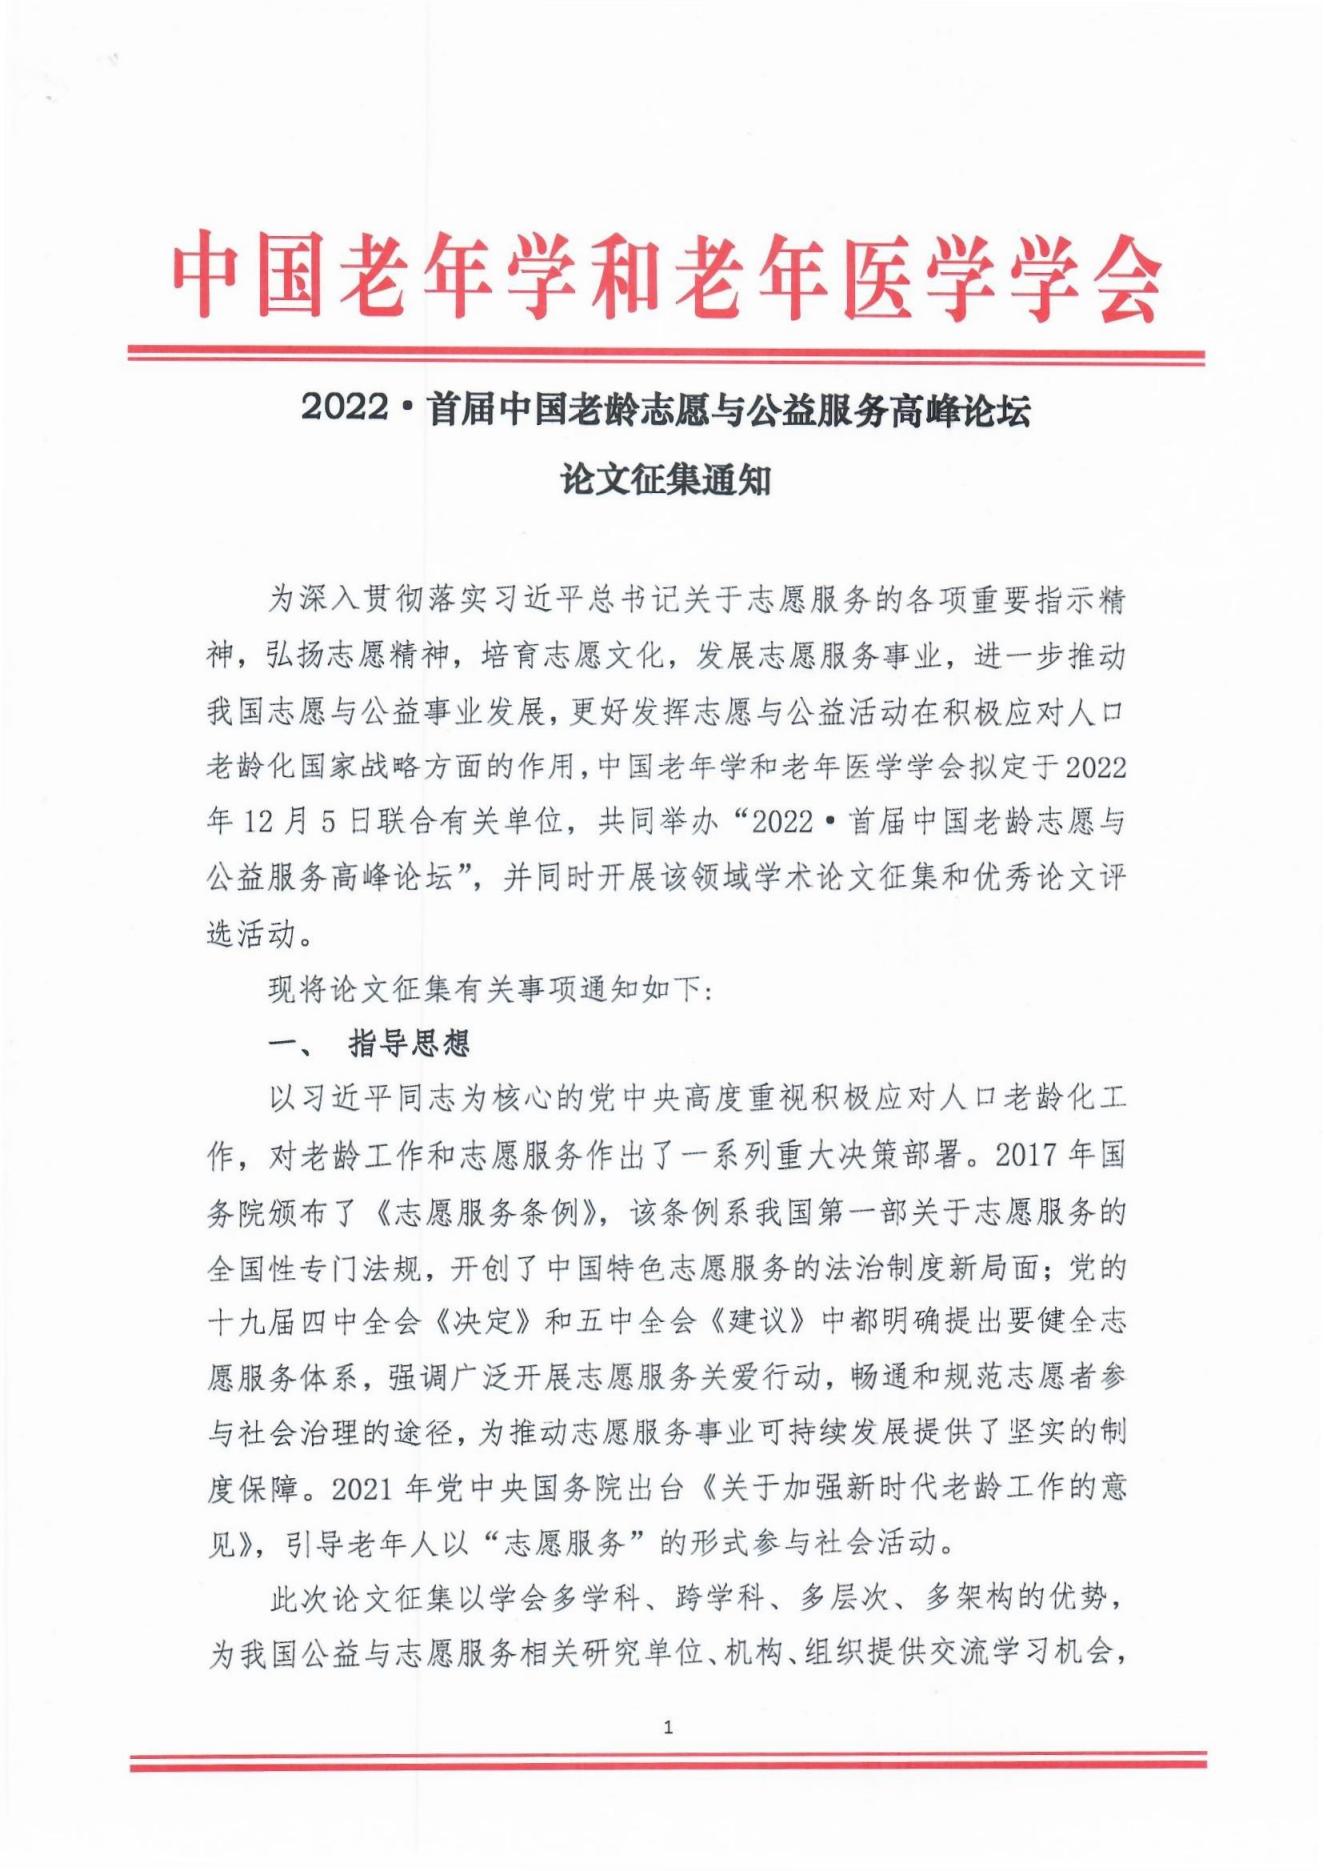 2022年首届中国老龄志愿与公益服务高峰论坛论文征集通知(1)_00.jpg